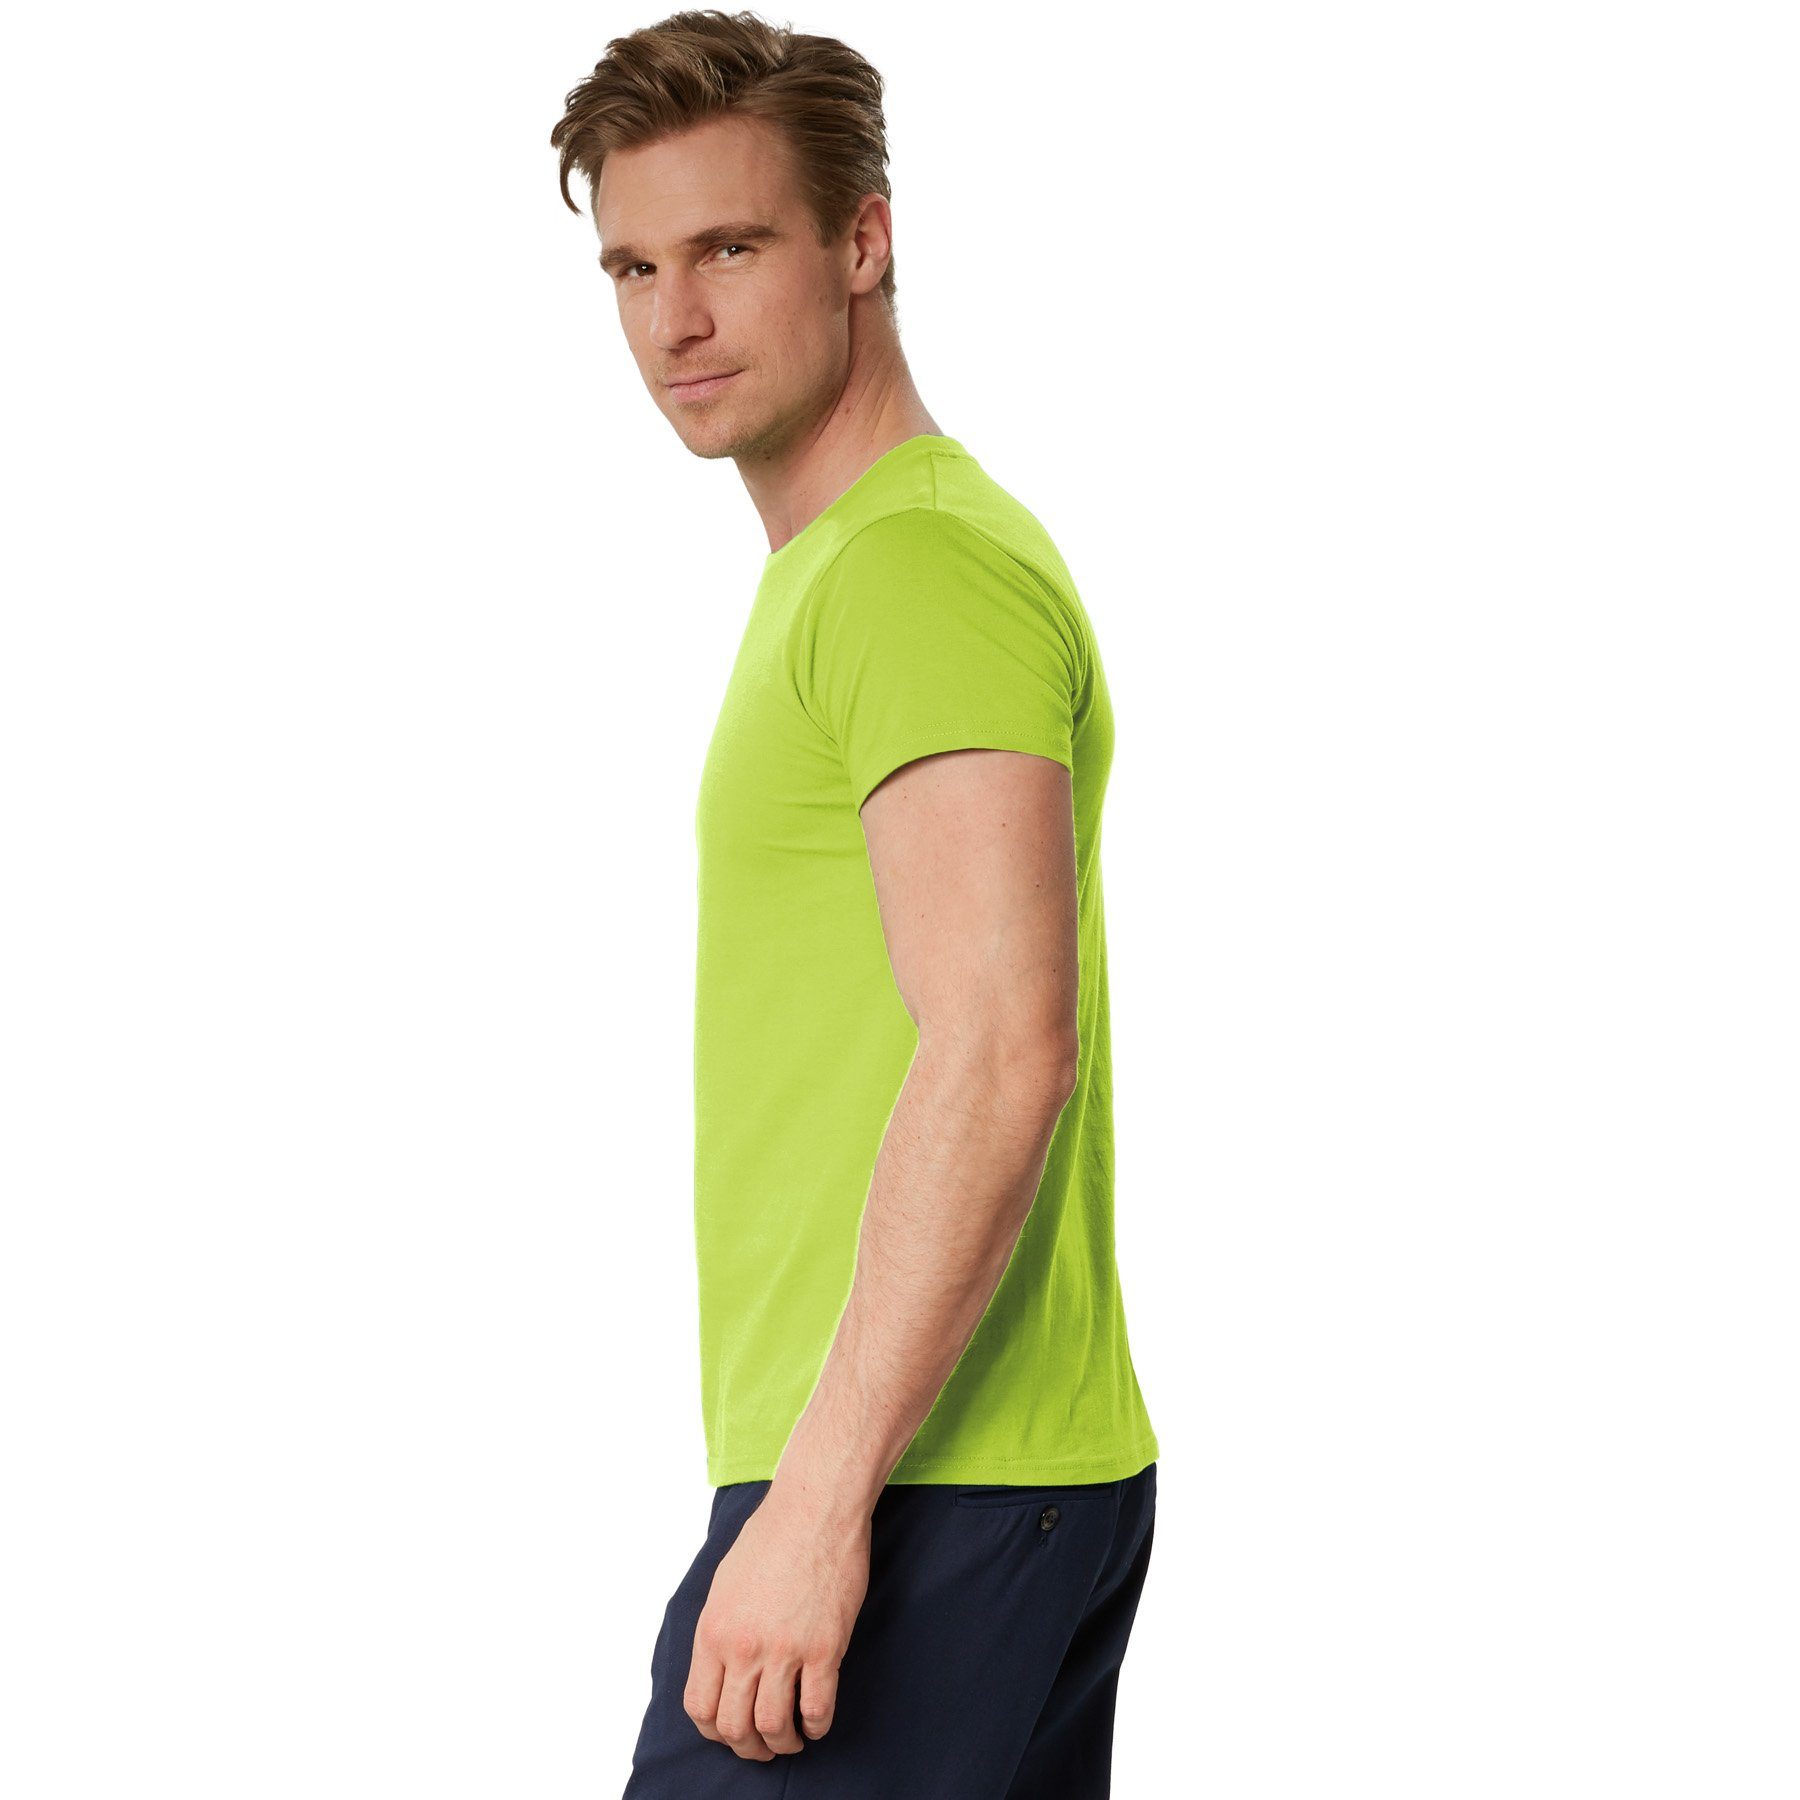 dressforfun T-Shirt Männer hellgrün Rundhals T-Shirt